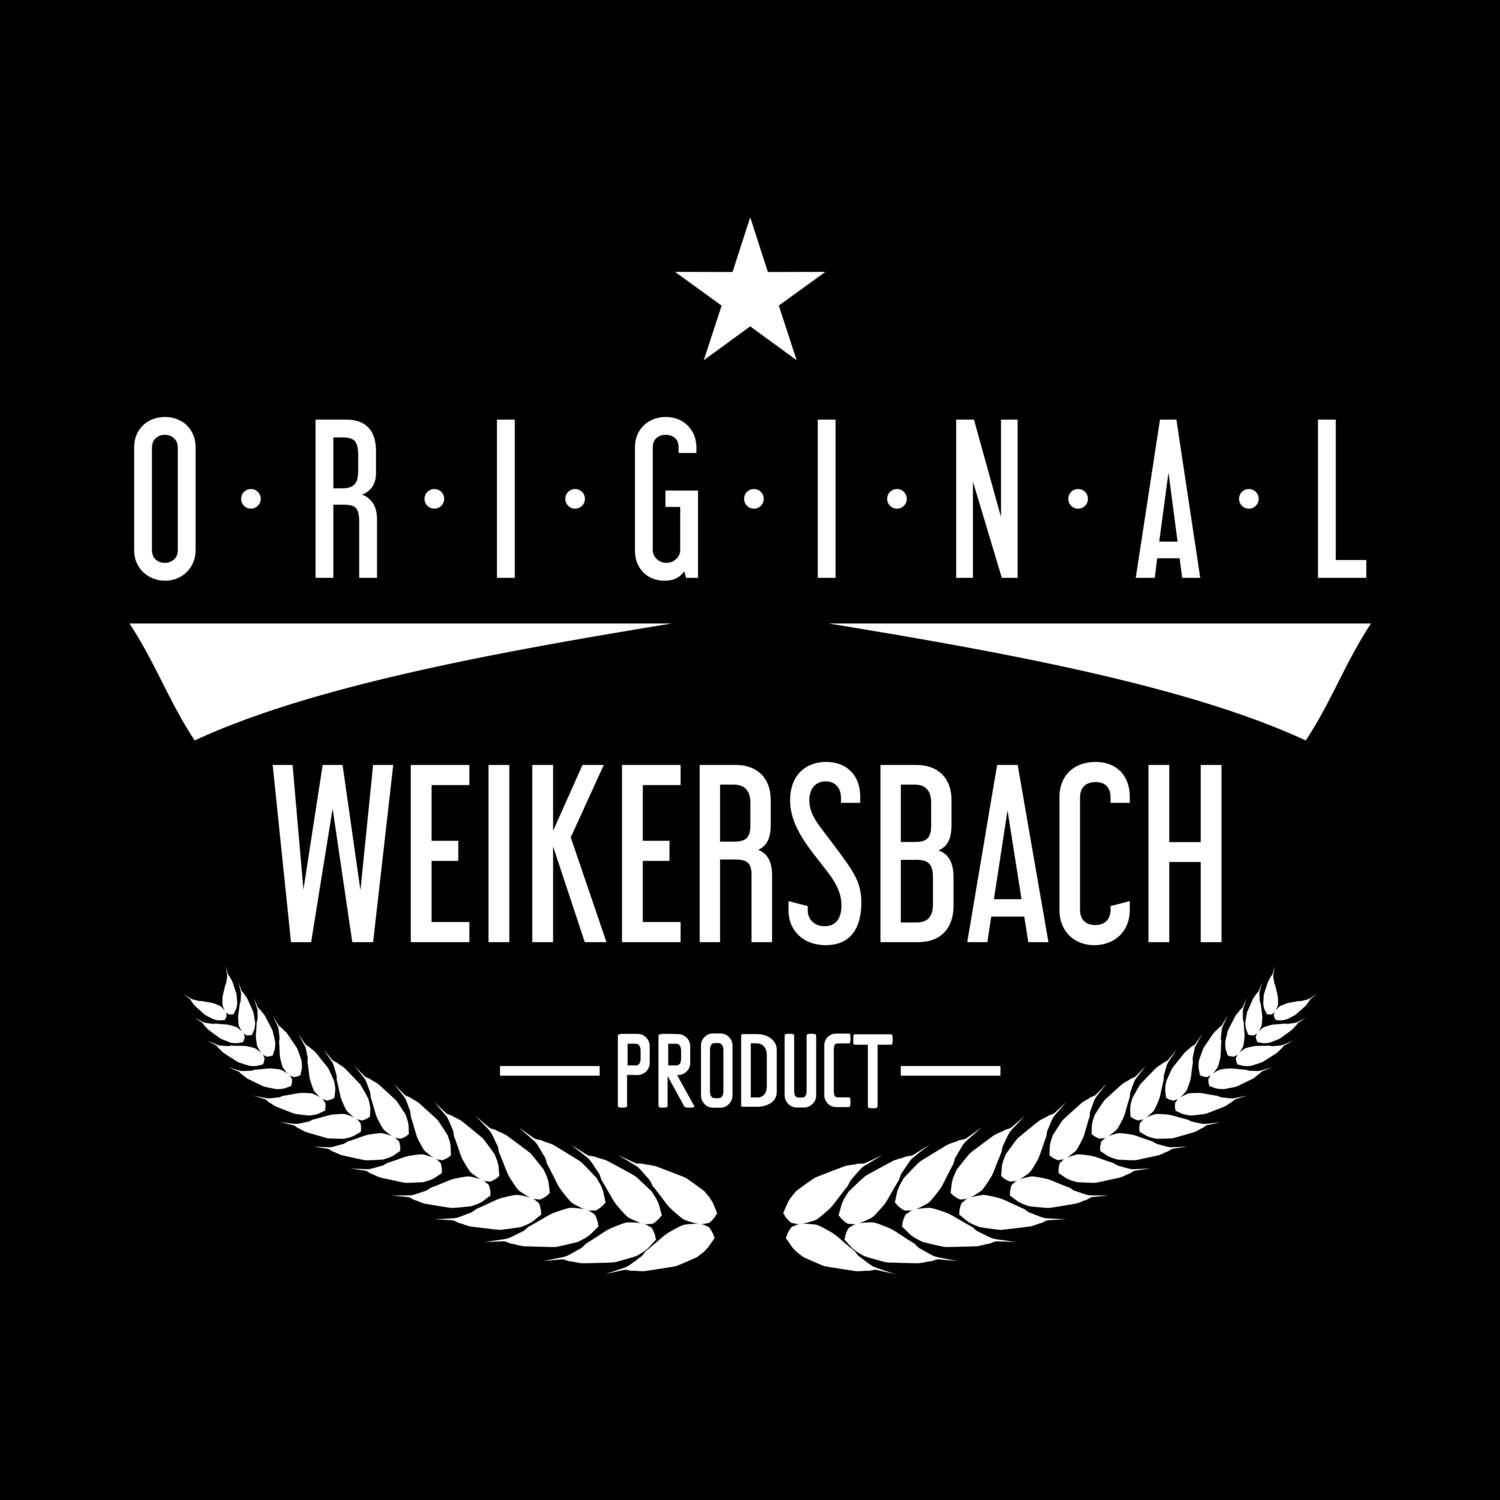 Weikersbach T-Shirt »Original Product«